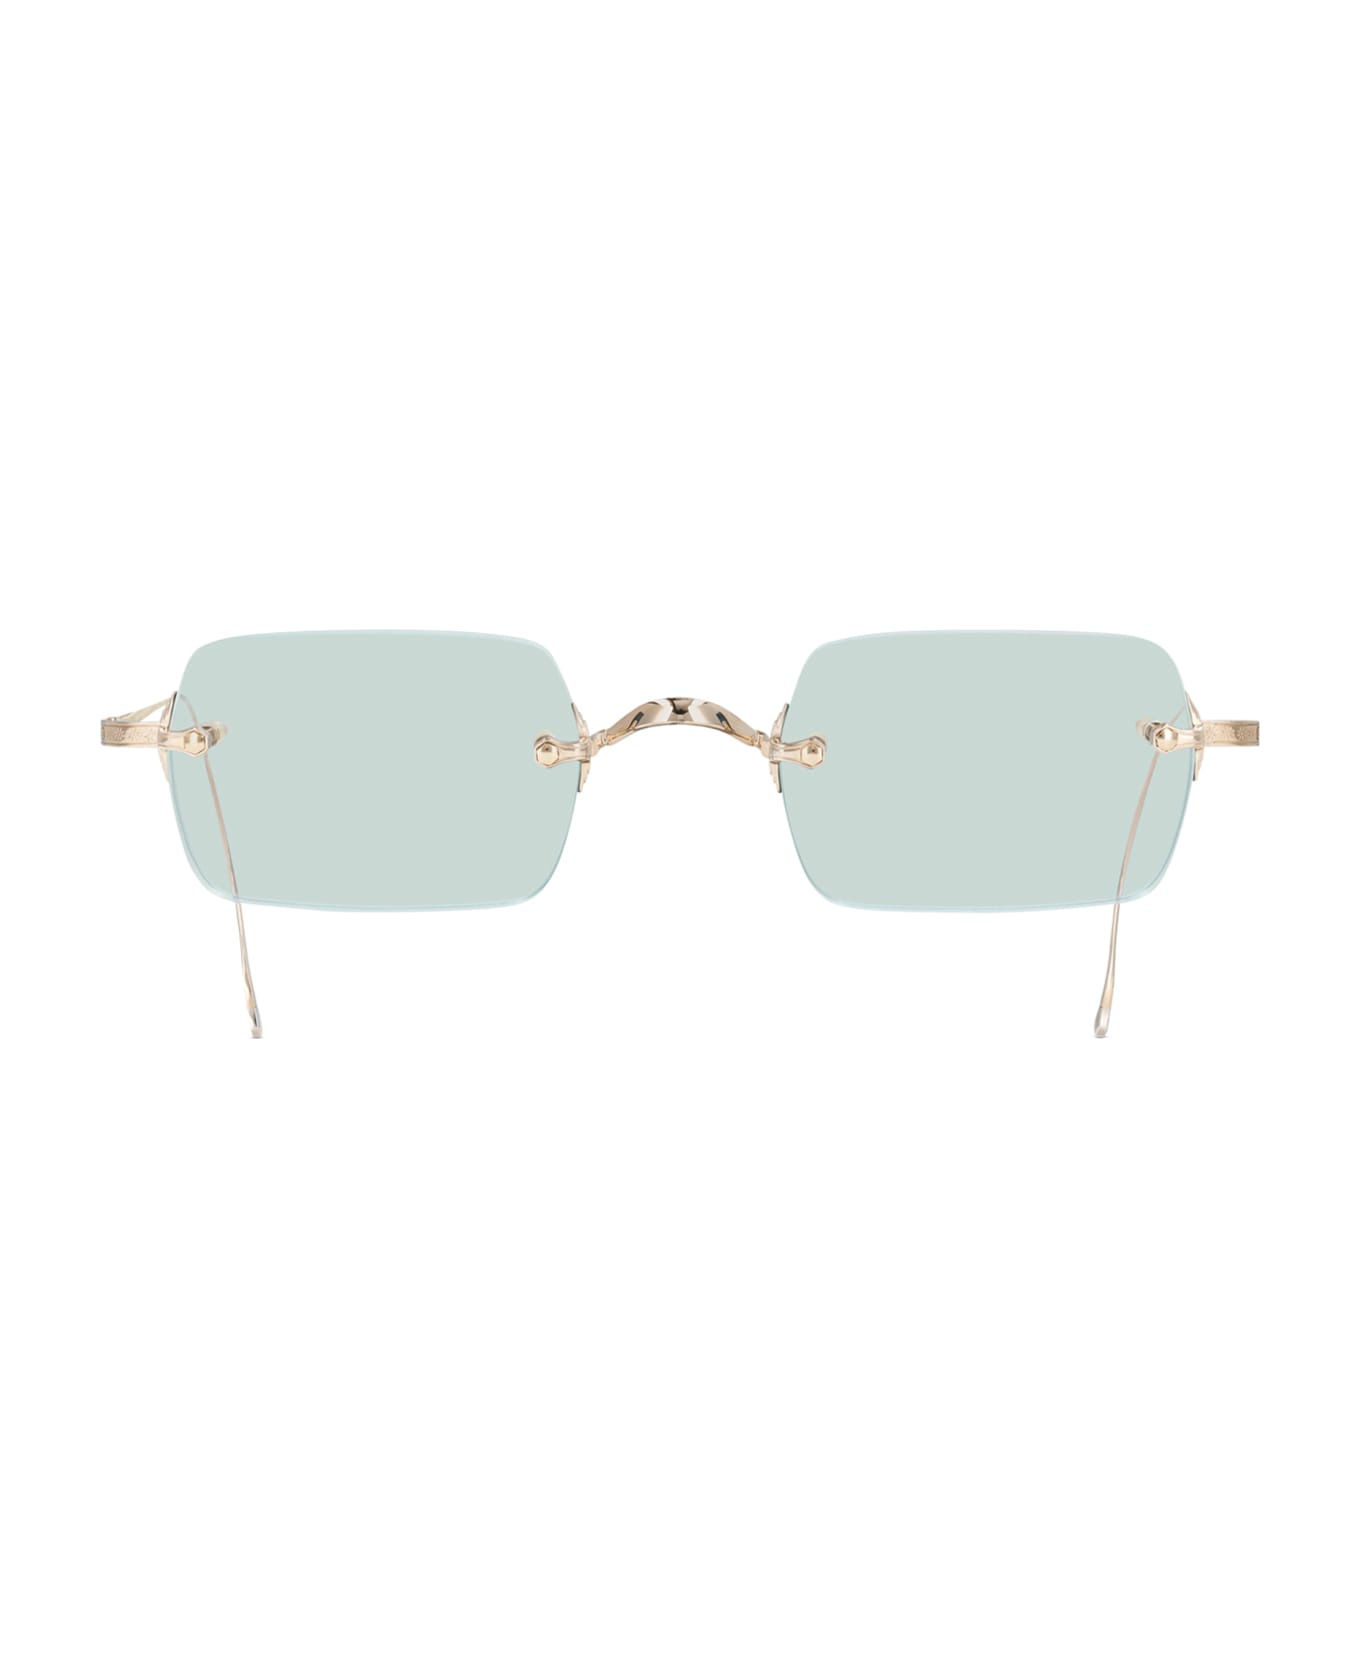 Mr. Leight Banzai S 12k White Gold Sunglasses -  12K White Gold